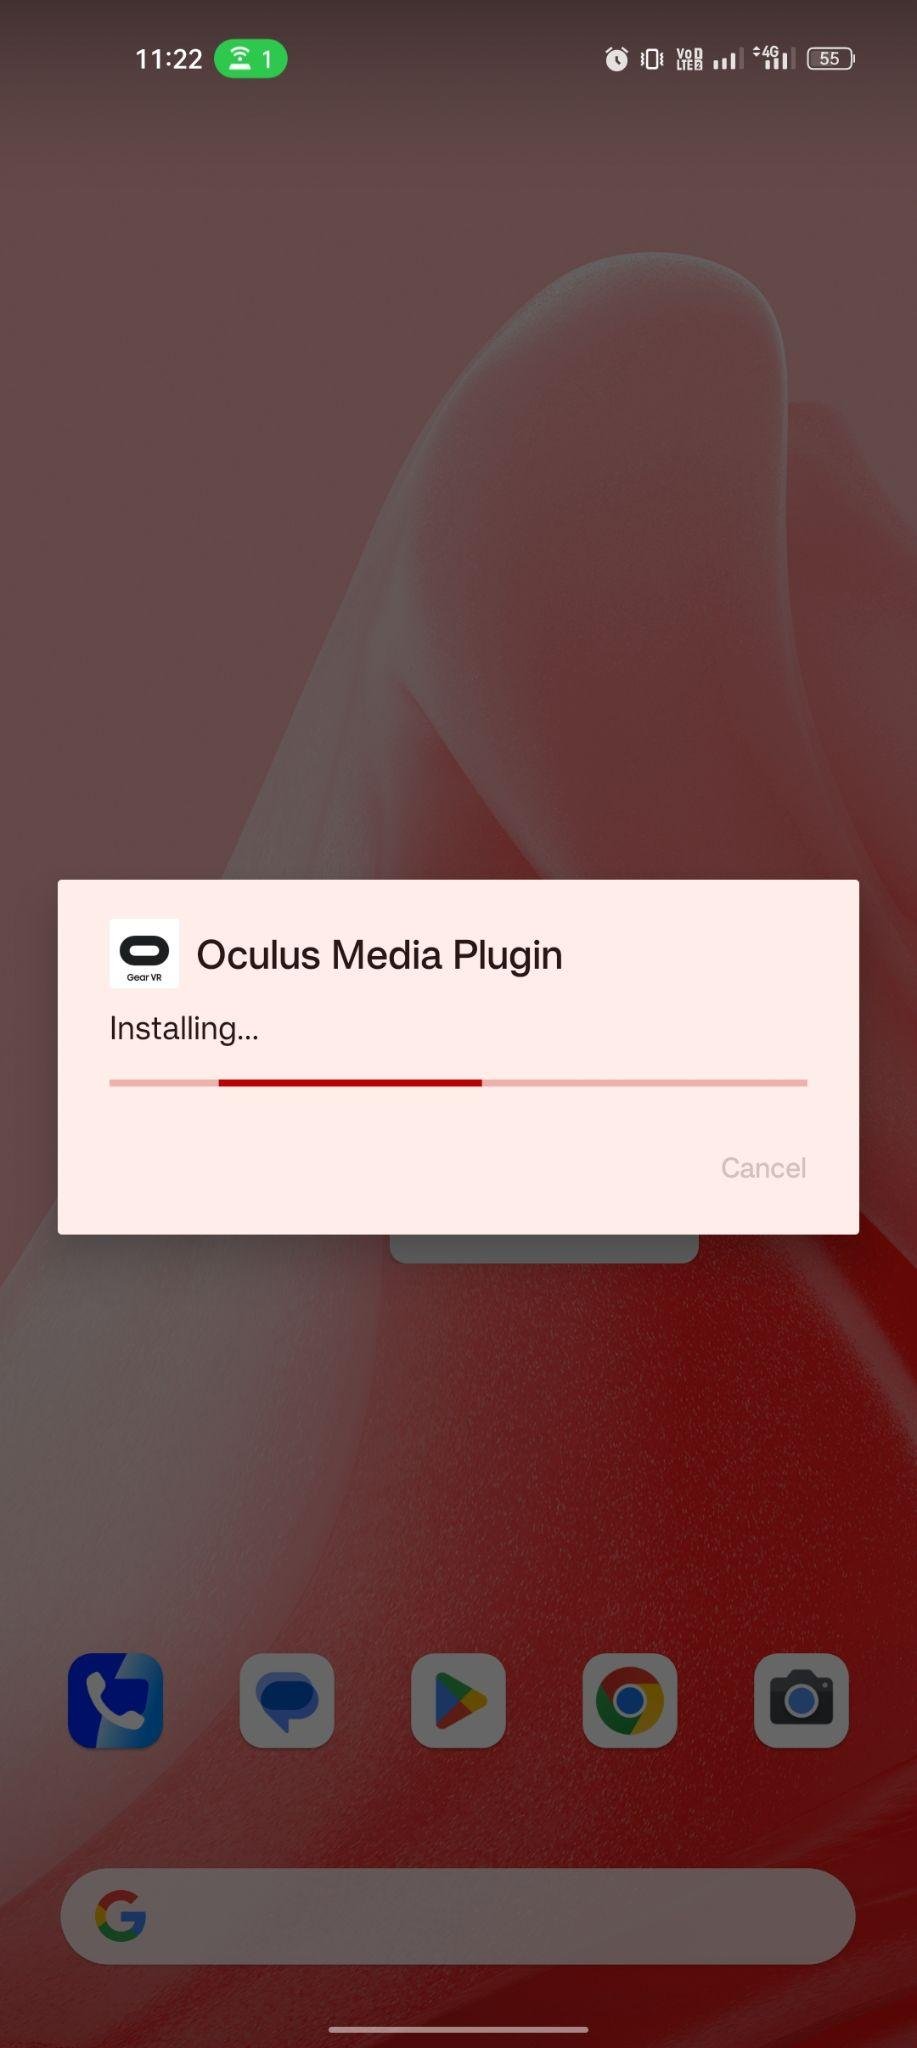 Oculus Media Plugin apk installing